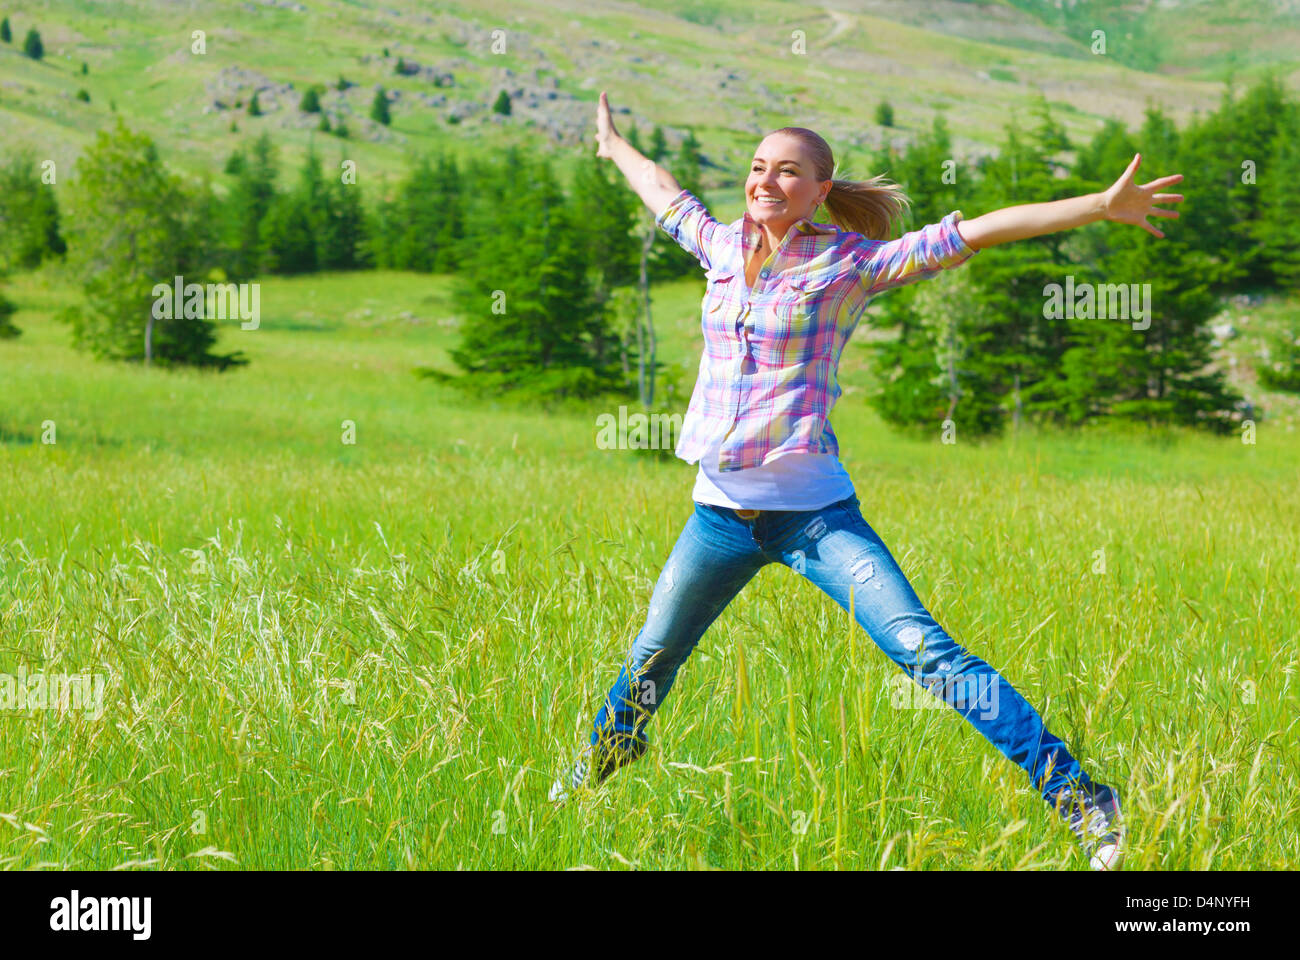 Happy girl de sauter sur le terrain, profitant de l'air frais et l'herbe verte du printemps, la liberté et le bonheur concept Banque D'Images